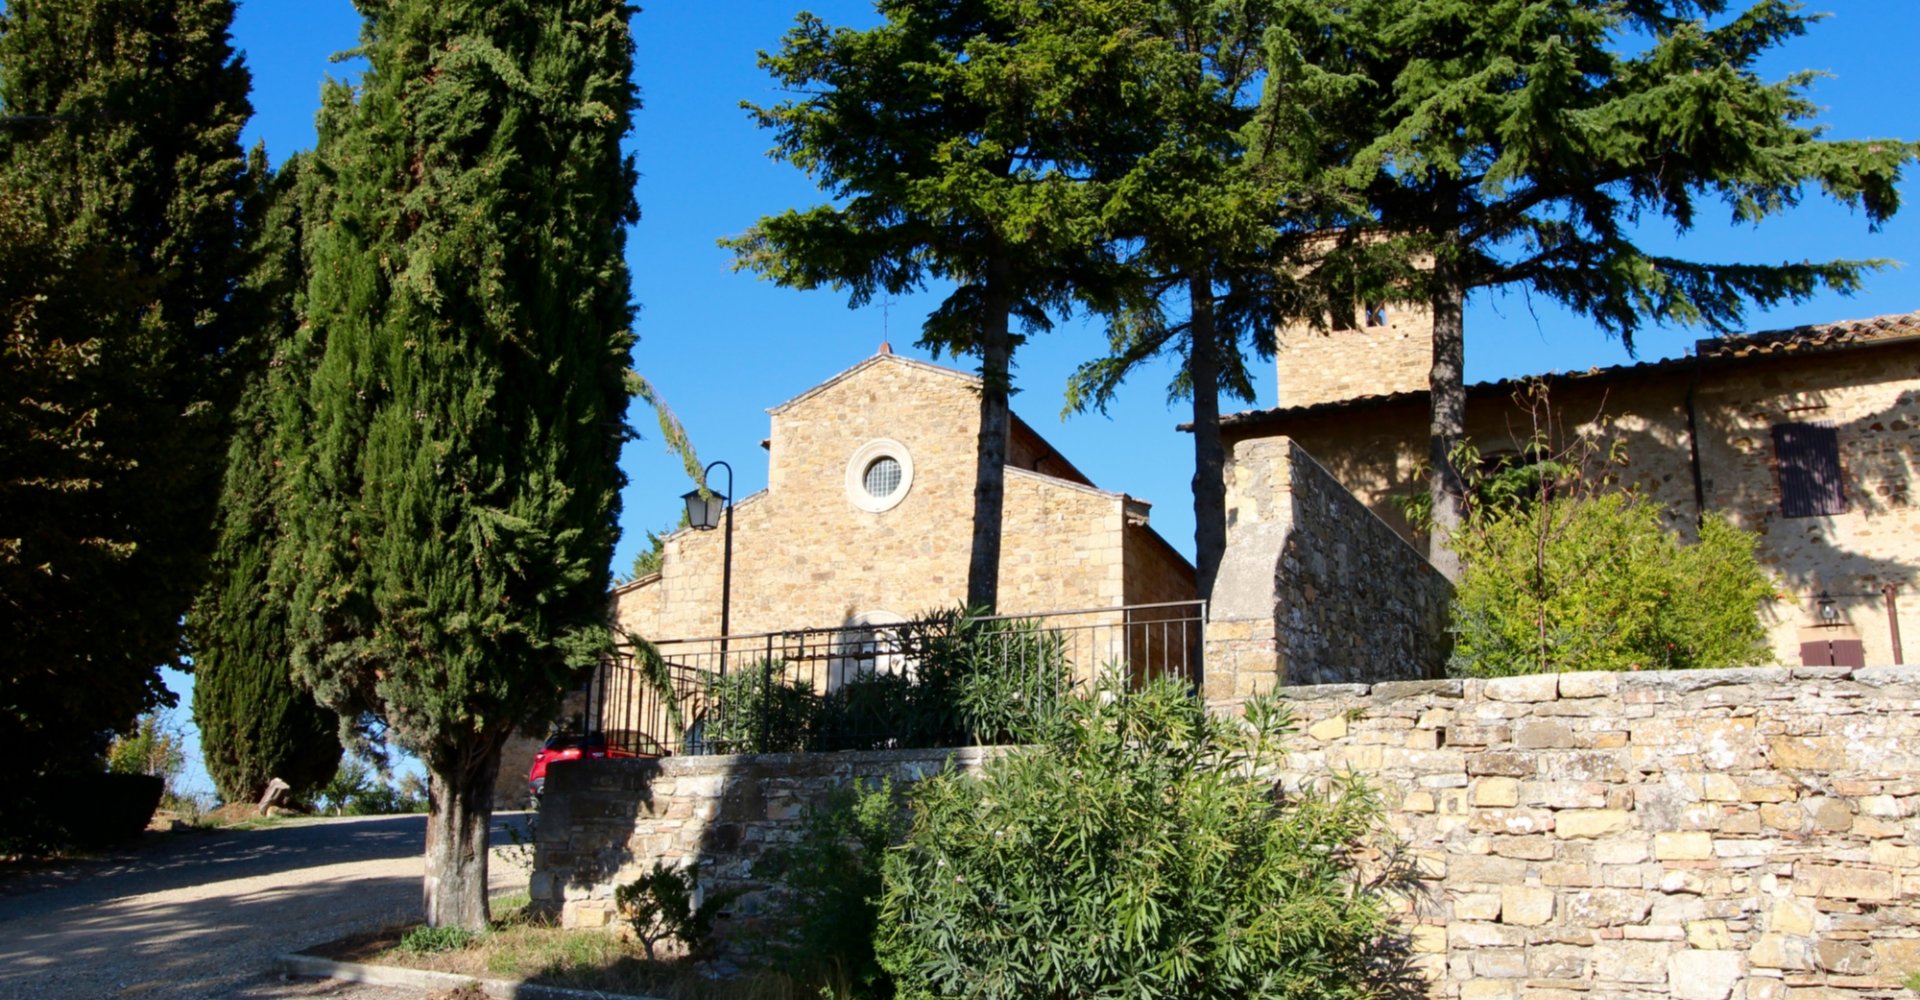 La parroquia Sant'Agnese y los característicos cipreses